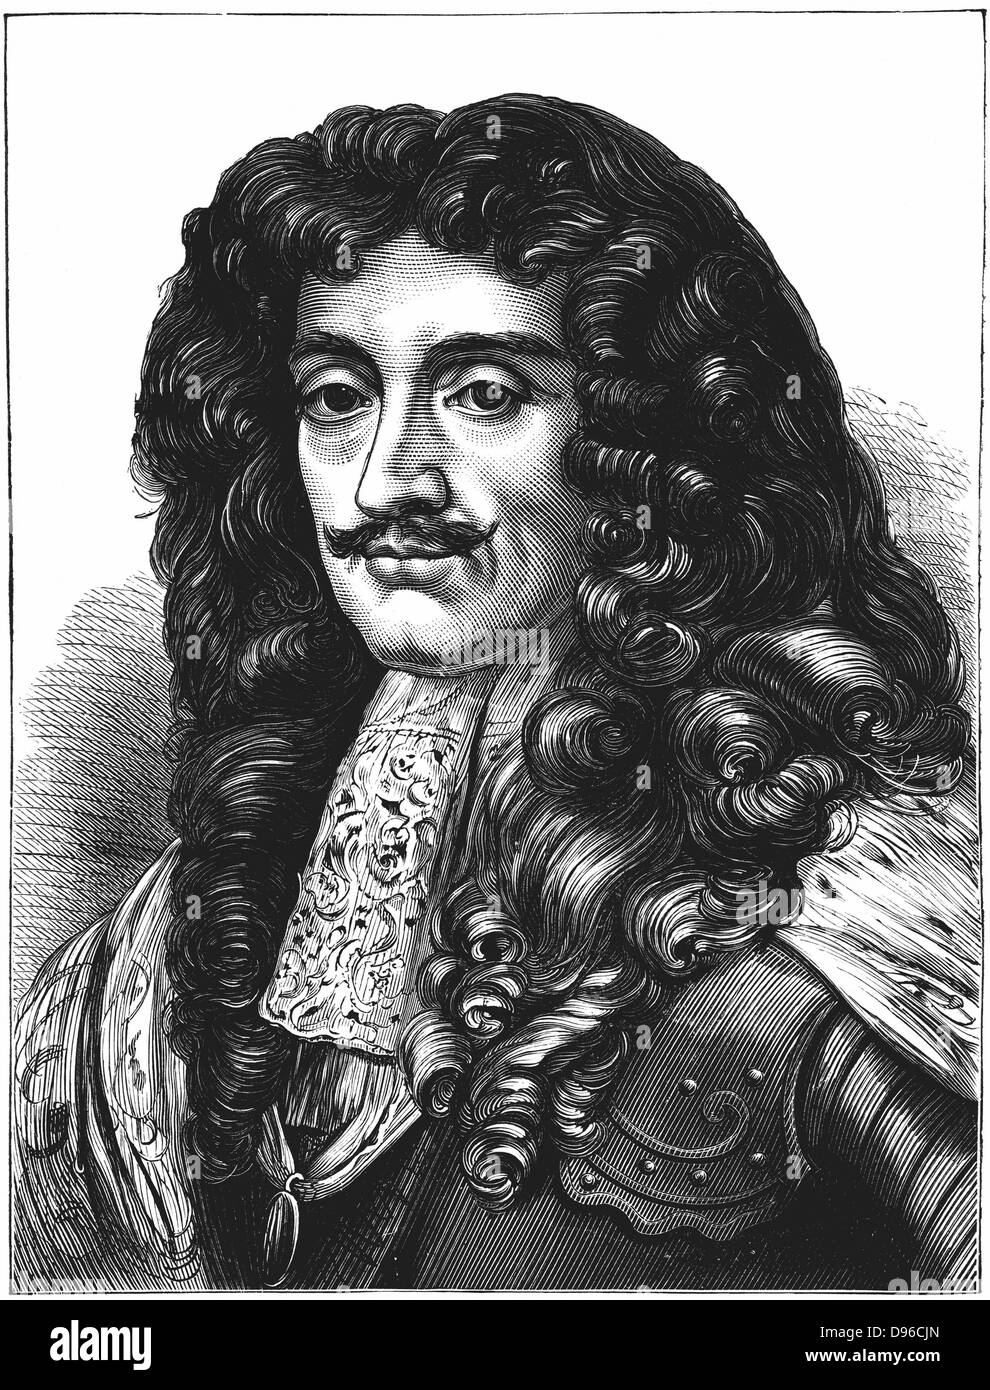 Charles II (1630-1685) König von Großbritannien und Irland aus dem Jahre 1660 nach der Restauration der Monarchie.  Gravur. Stockfoto